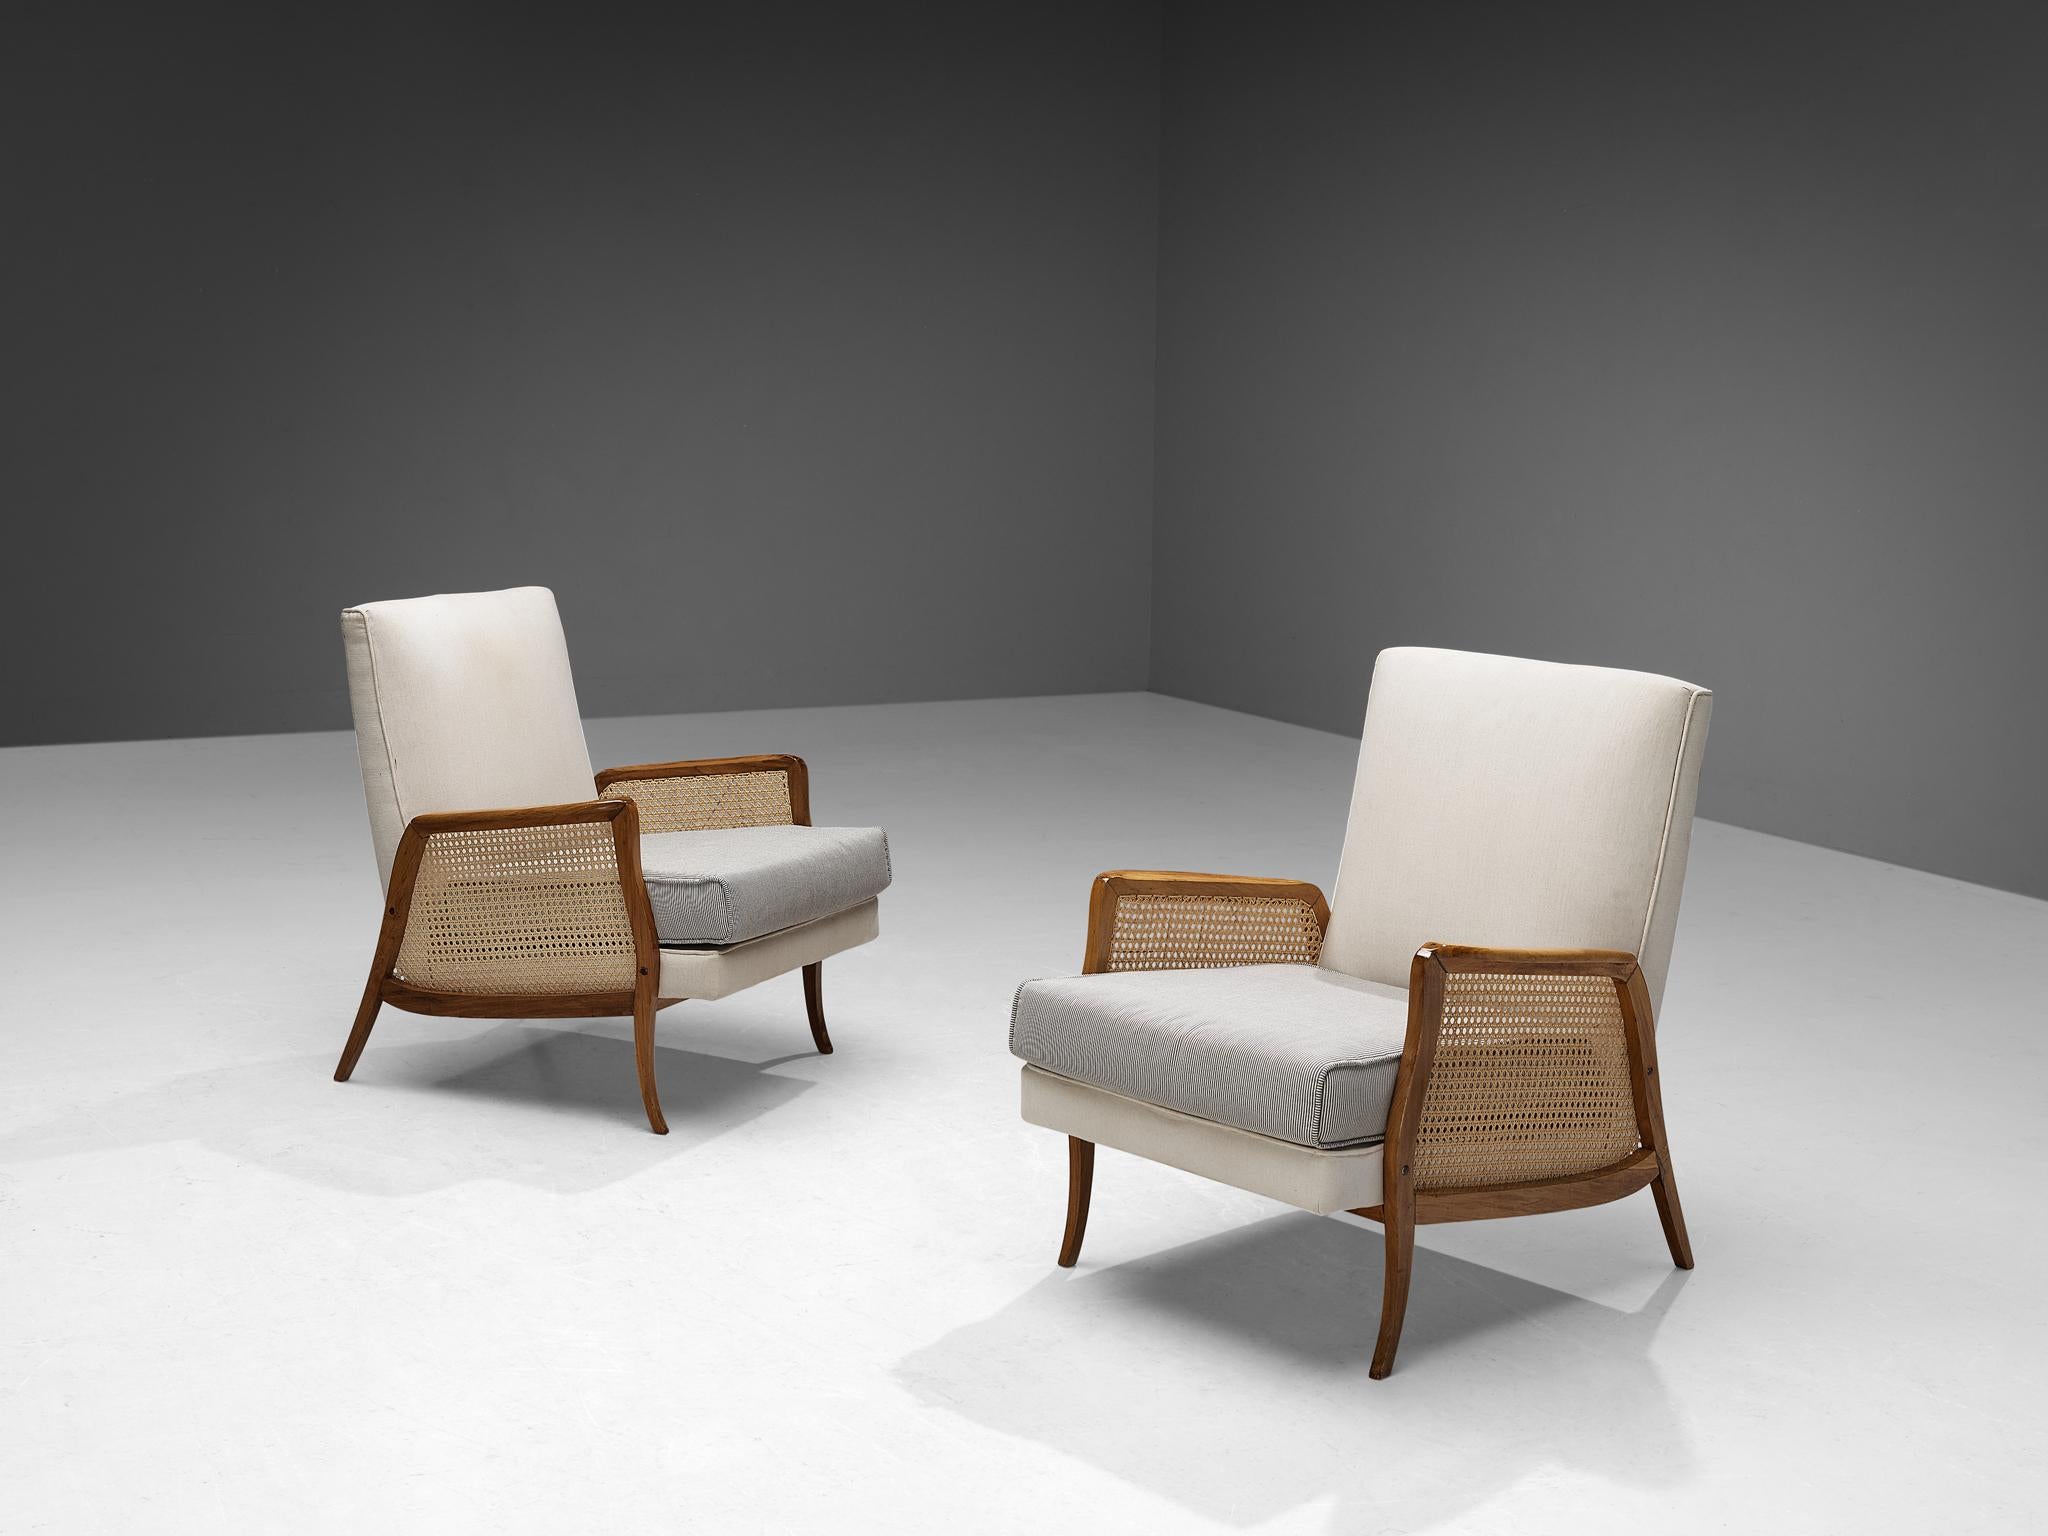 Paar Loungesessel, Nussbaum, Stoff, Schilfrohr, Brasilien, 1950er Jahre.

Der Stil dieser brasilianischen Sessel ist einfach und zurückhaltend, mit klaren, fließenden Linien im Design. Der Holzrahmen aus Nussbaum verkörpert markante, geschwungene